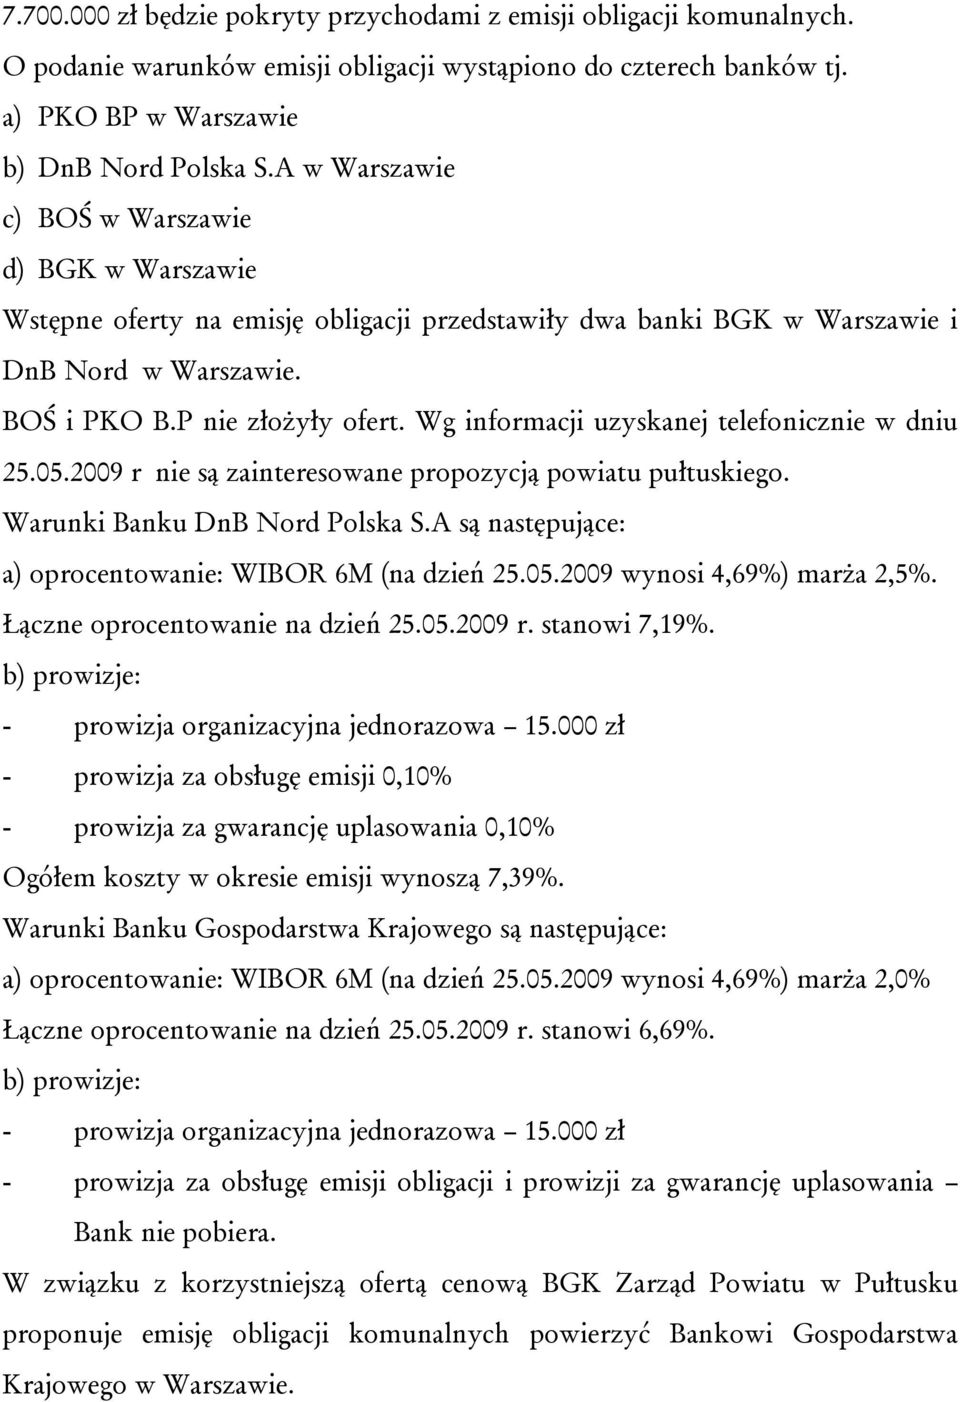 Wg informacji uzyskanej telefonicznie w dniu 25.05.2009 r nie są zainteresowane propozycją powiatu pułtuskiego. Warunki Banku DnB Nord Polska S.